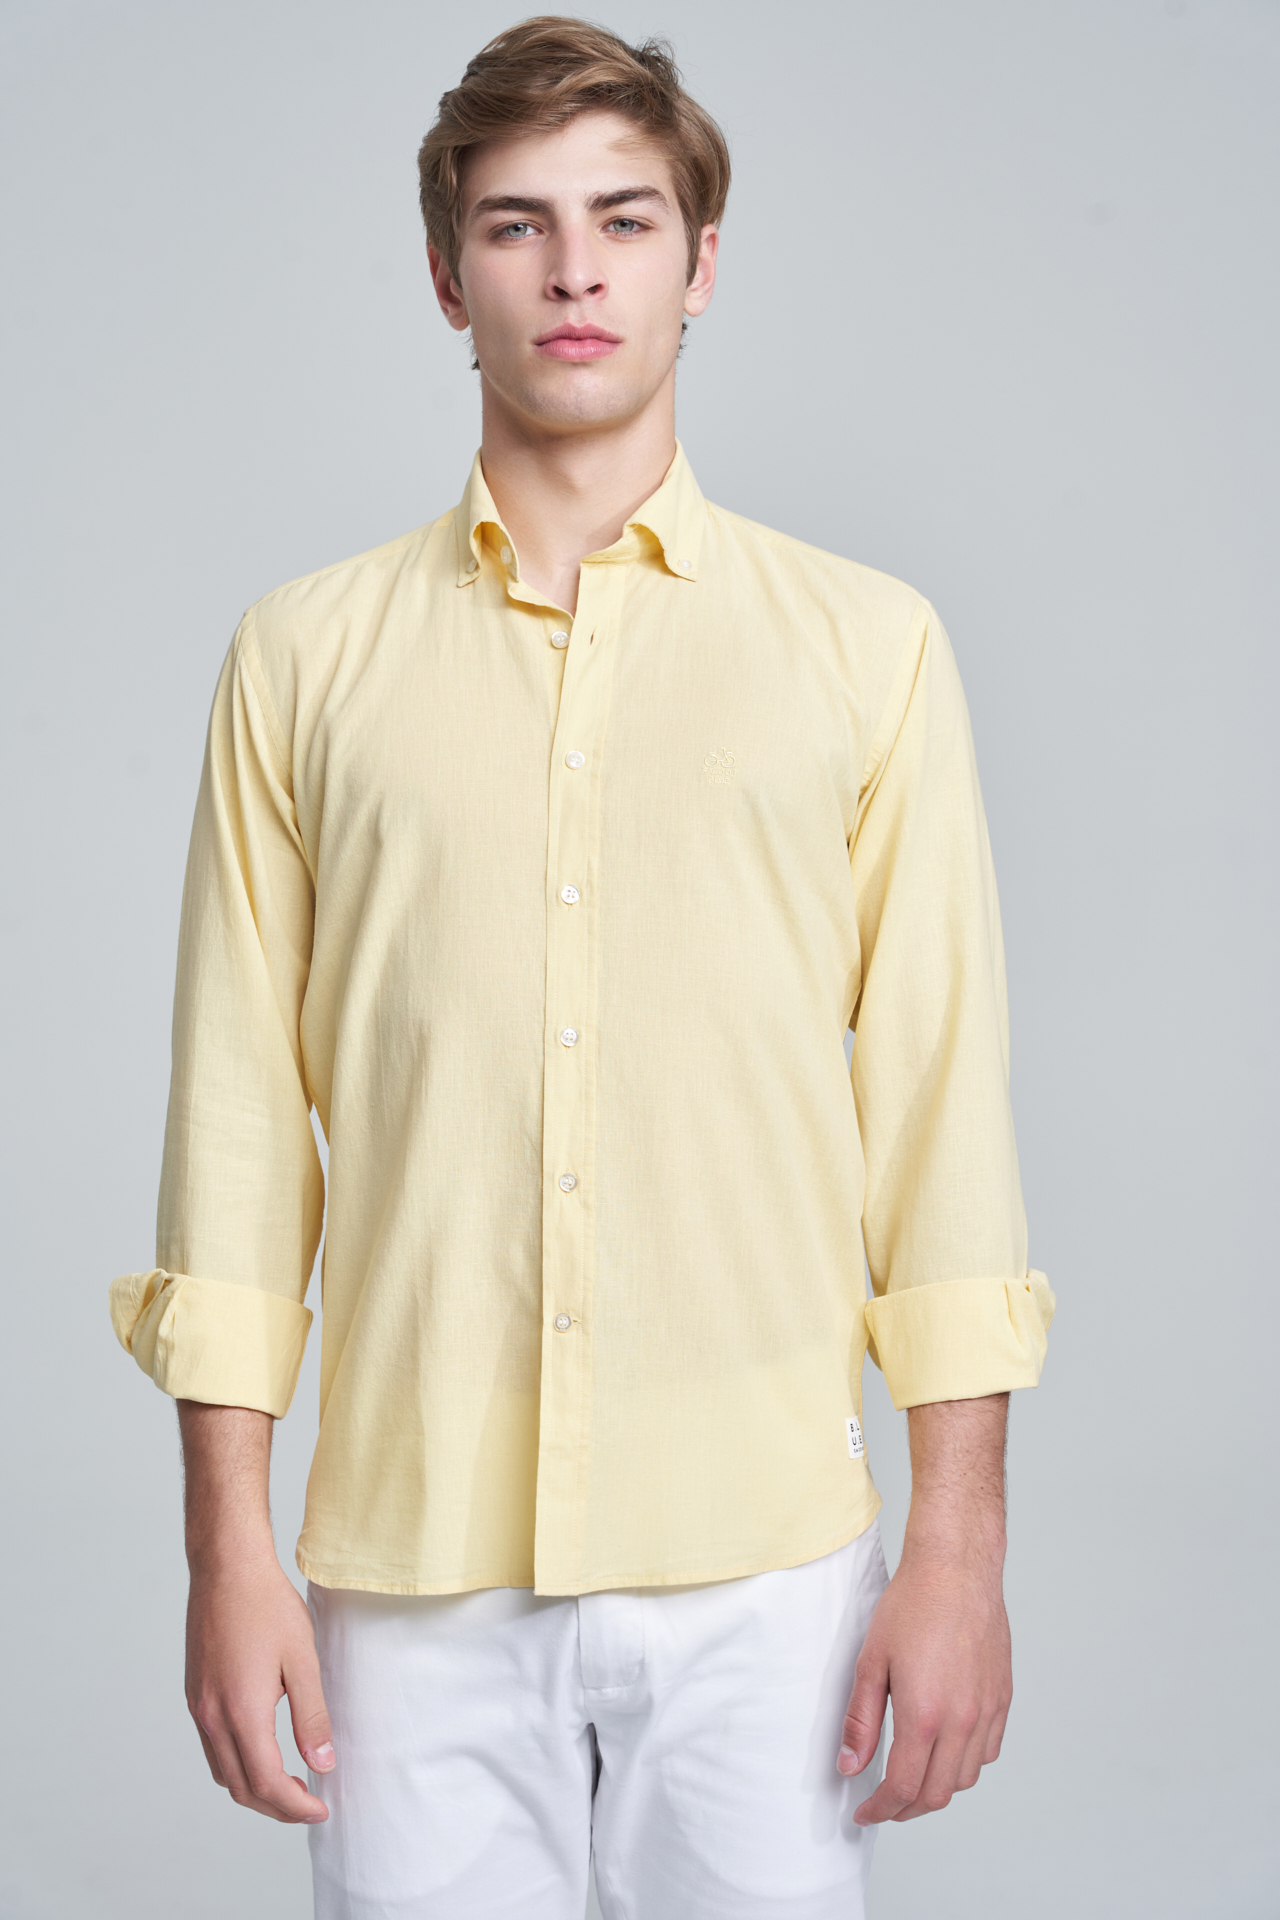 Shirt Sport Light Yellow Casual Man